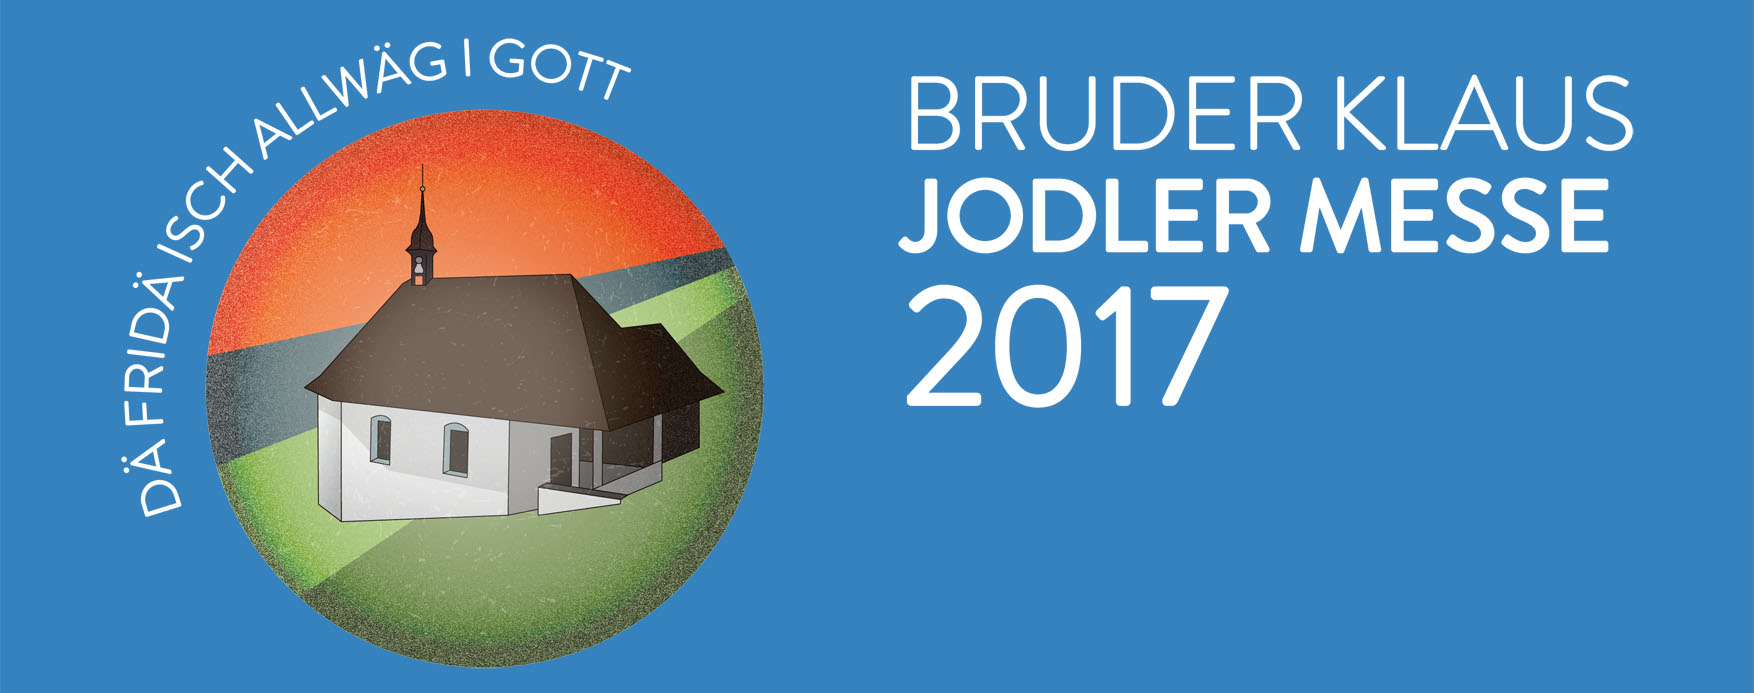 Bruder Klaus Jodler-Messe 2017